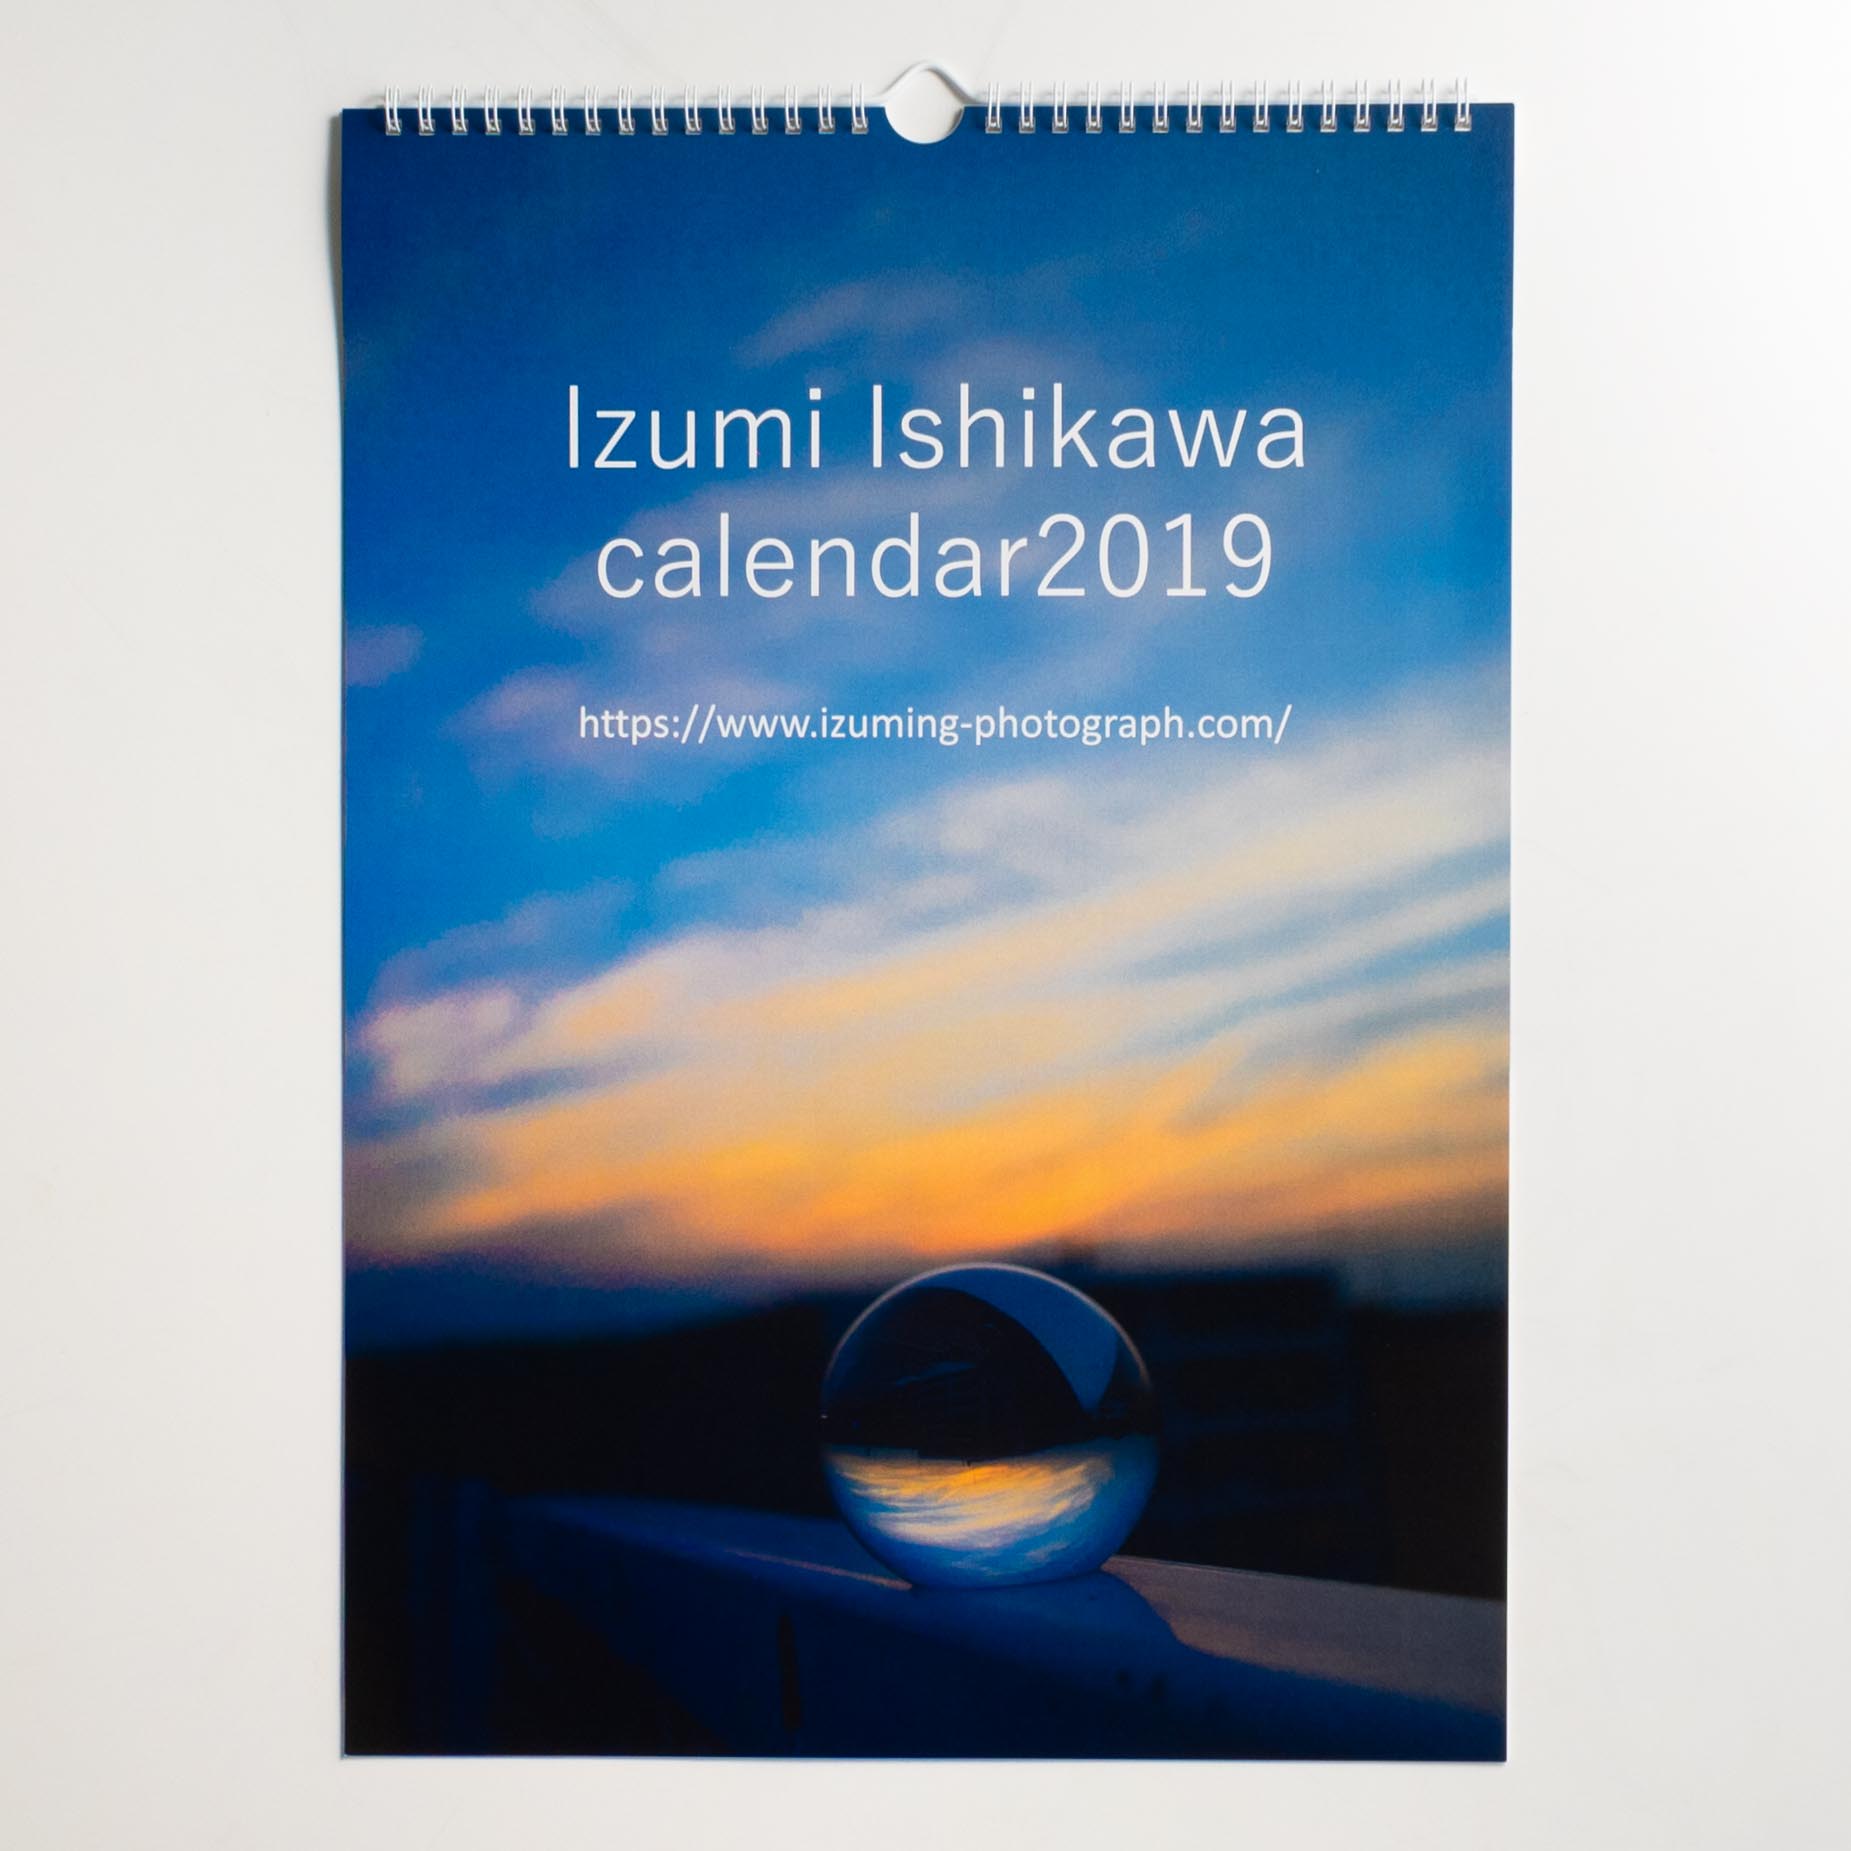 「石川　いづみ 様」製作のオリジナルカレンダー